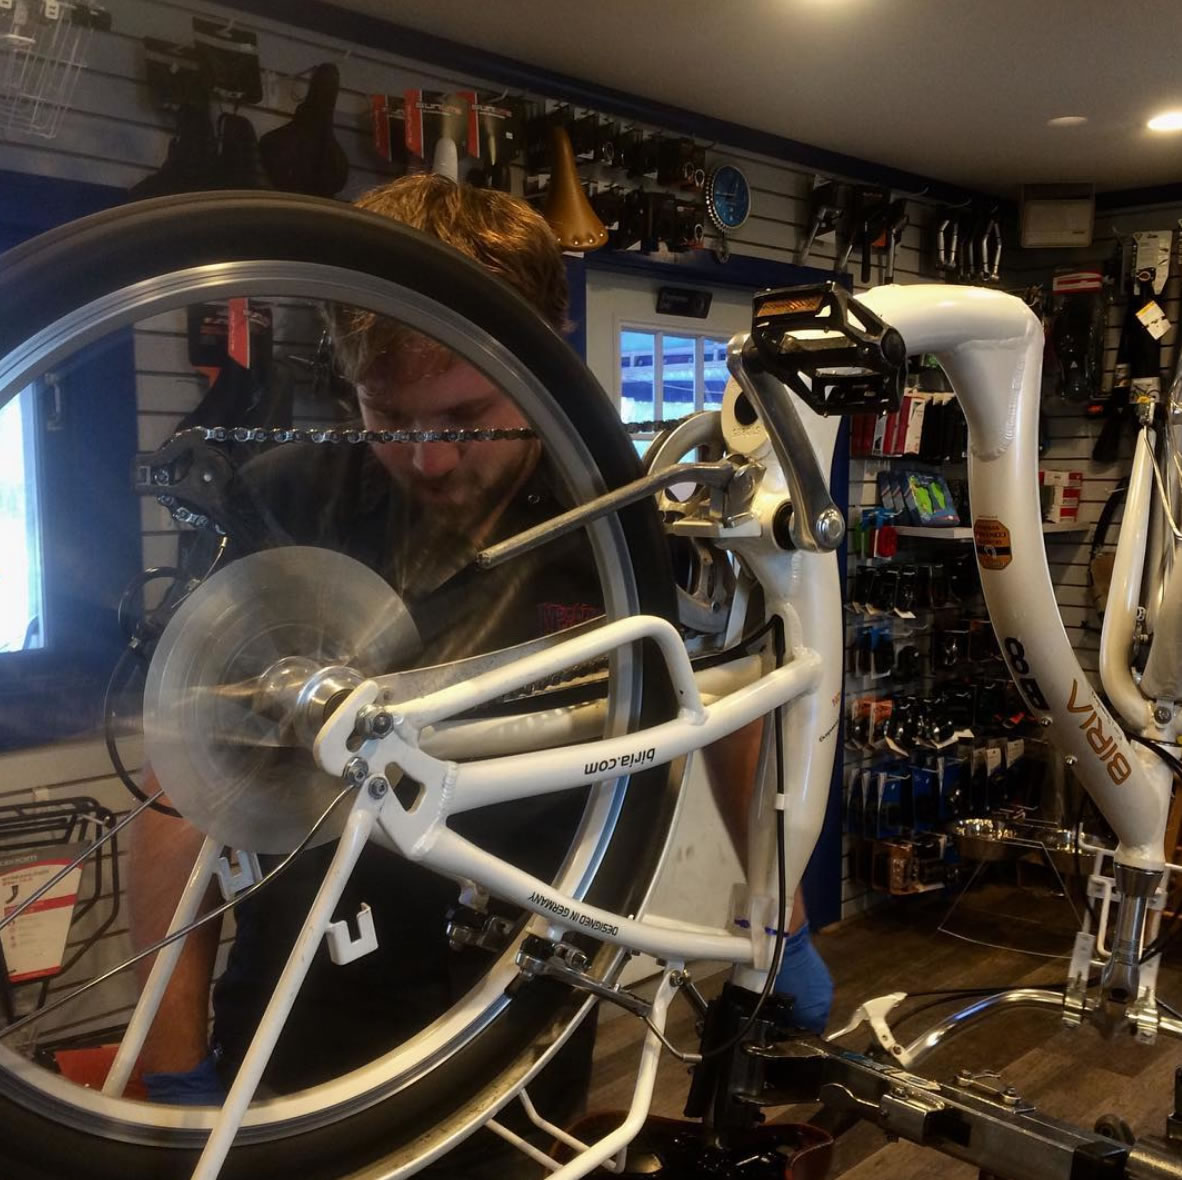 Jim repairing bike